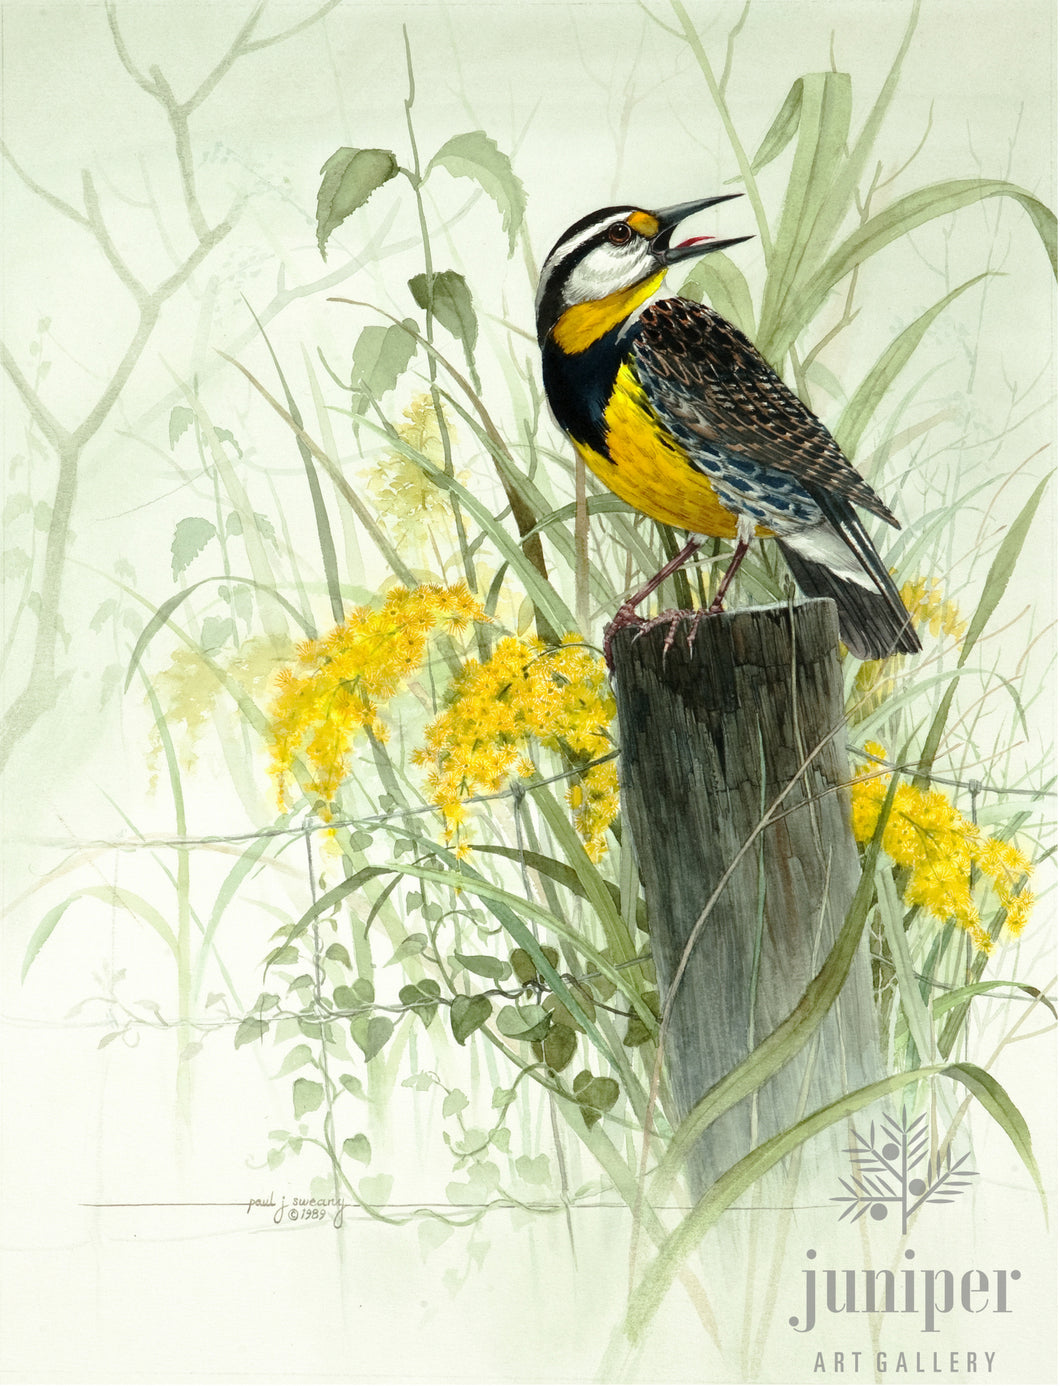 Meadowlark by Paul J Sweany